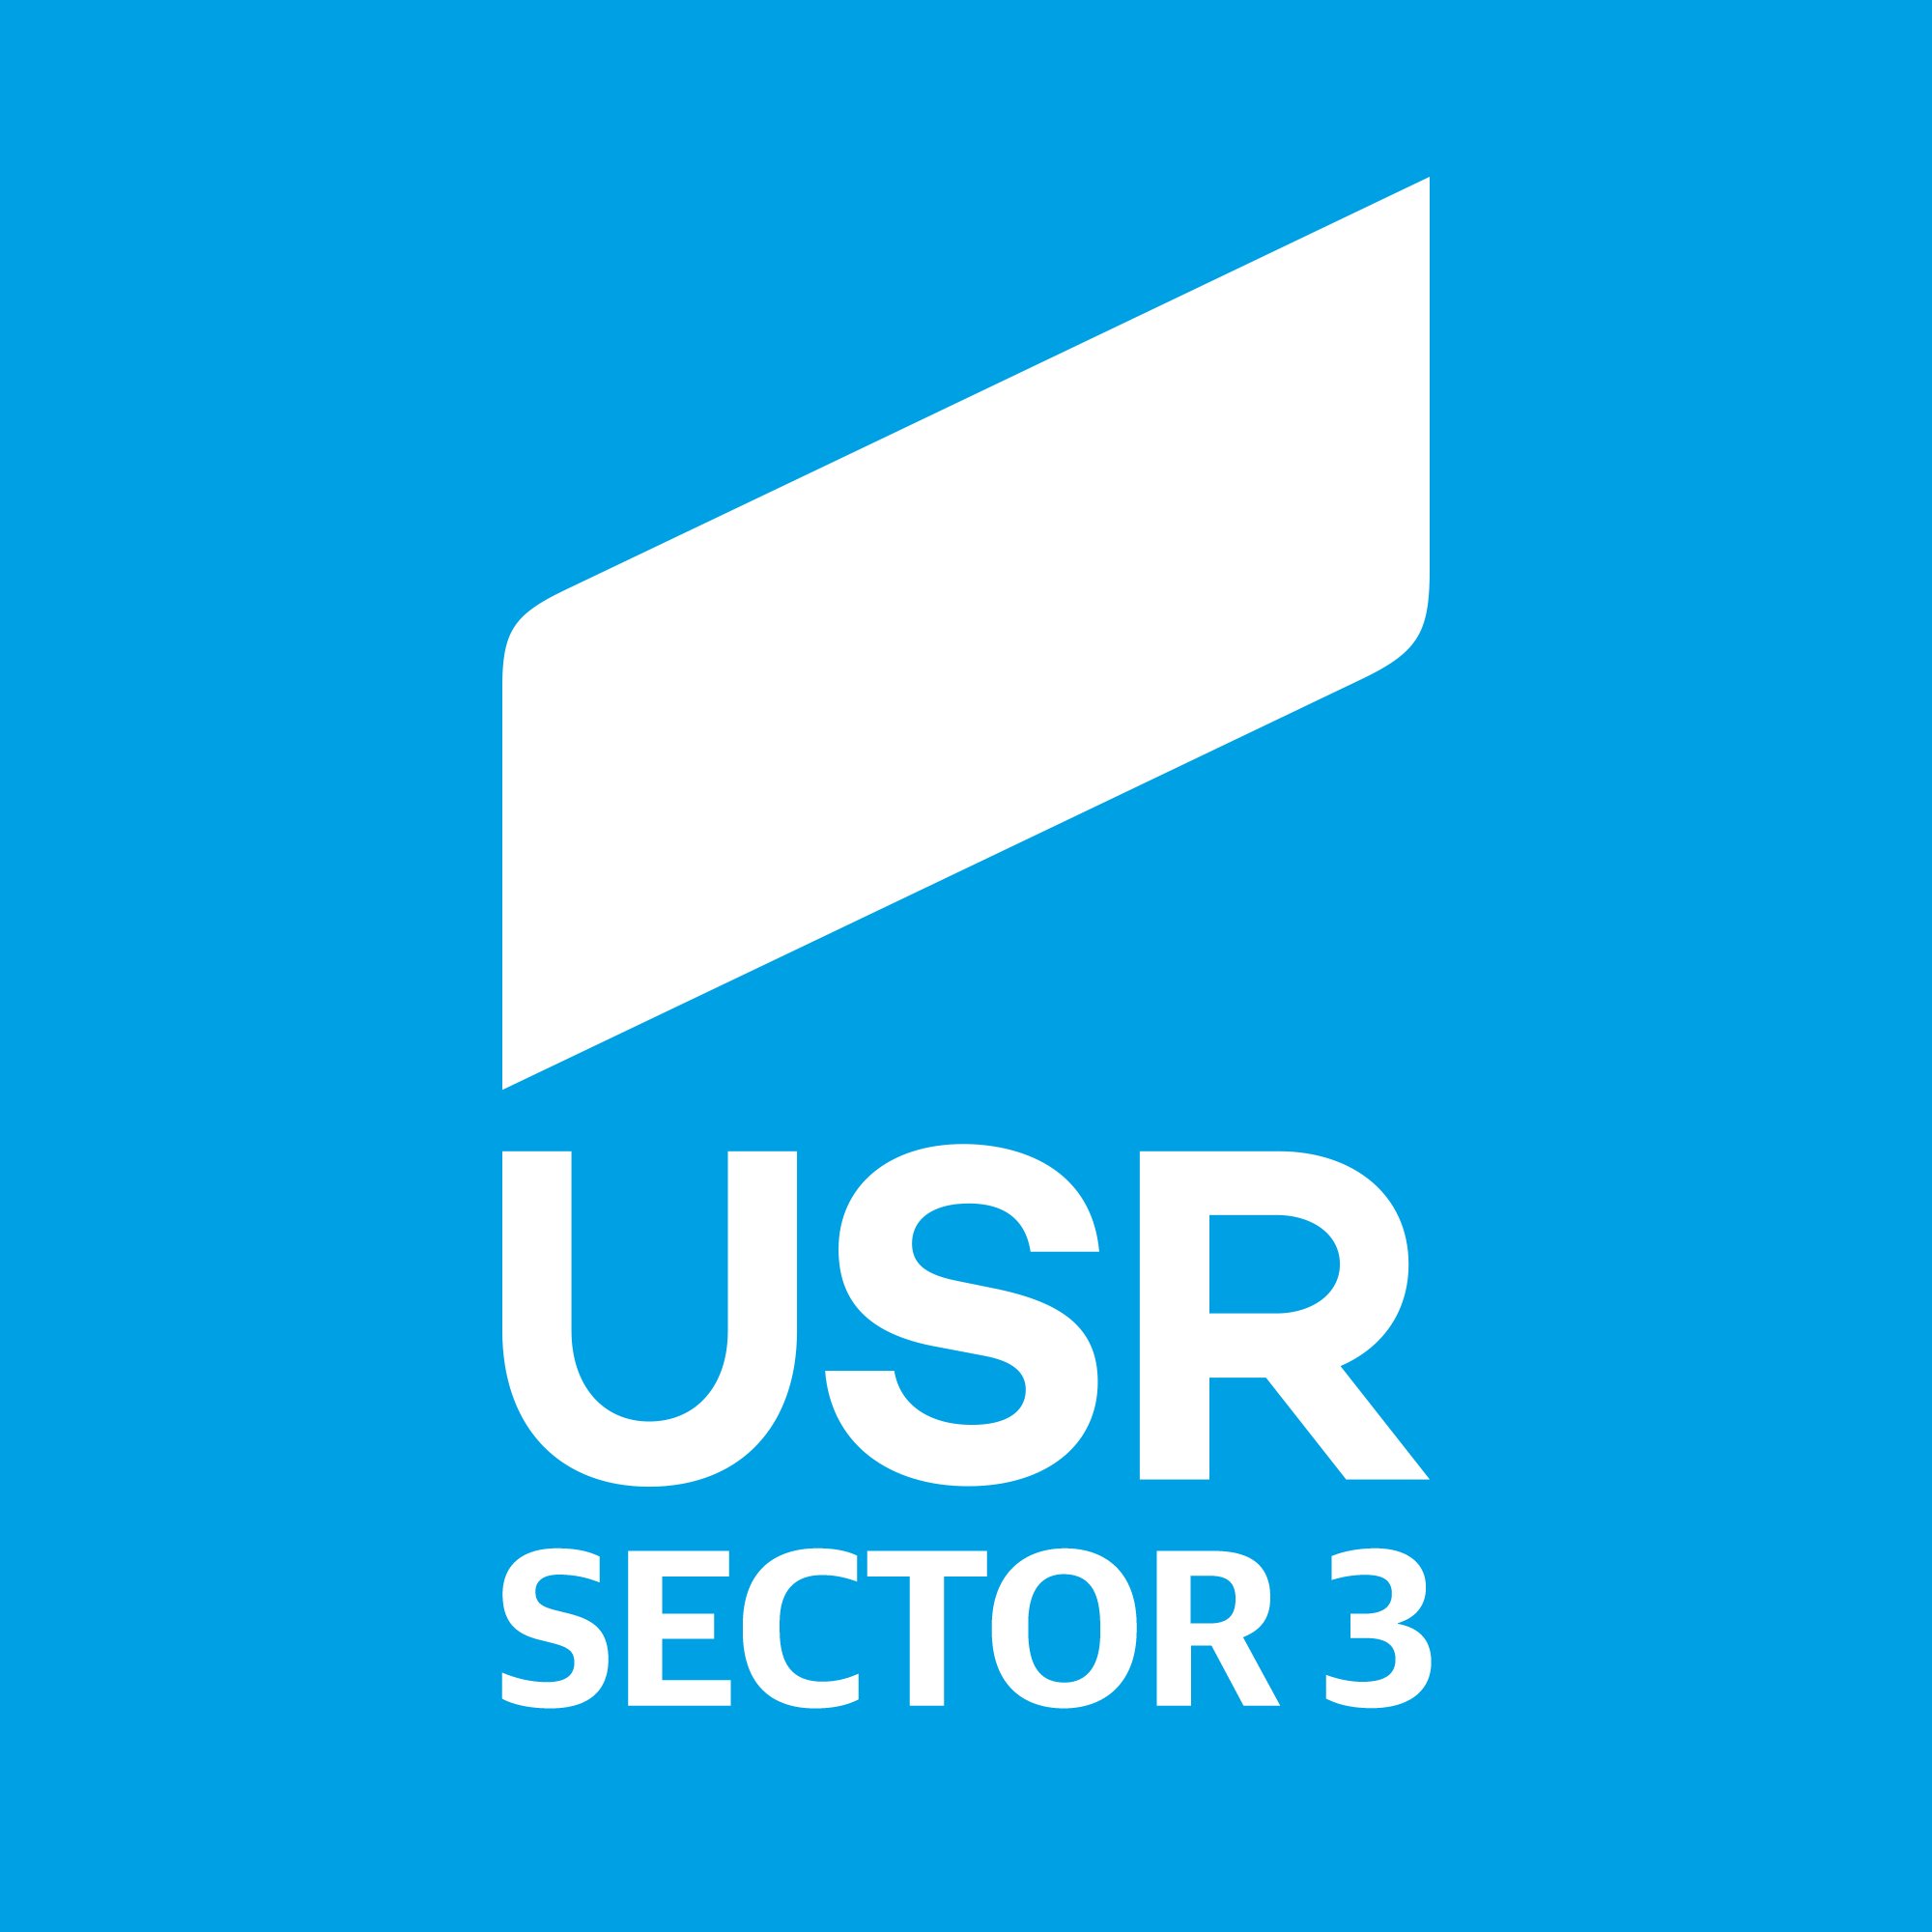 Filiala USR Sector 3
Adrese de contact: s3@usr.ro si pentru consilieri locali USR: consilieri.s3@usr.ro